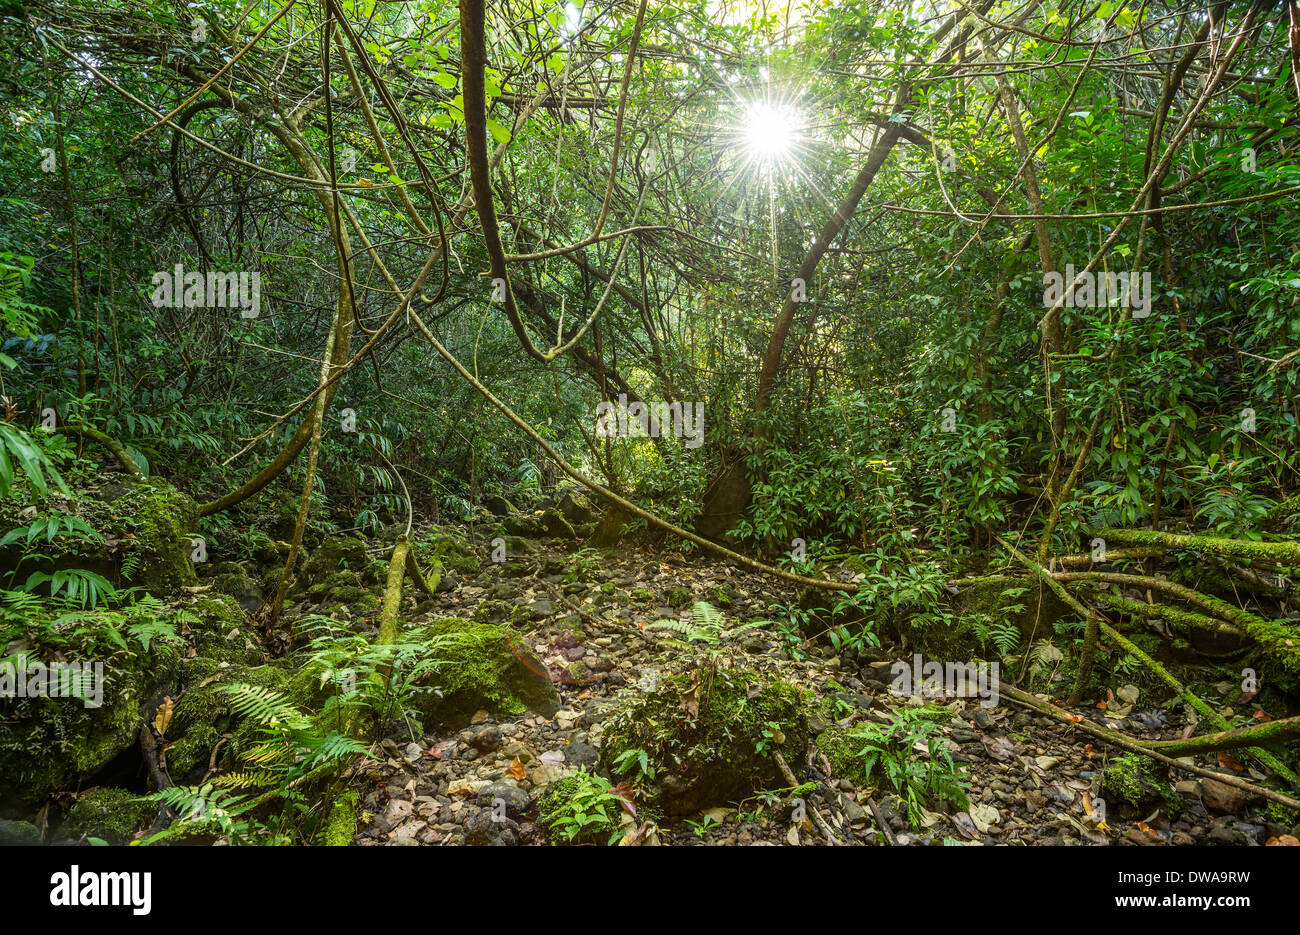 The Jungles of Nahiku on the Hawaiian Island of Maui. Stock Photo